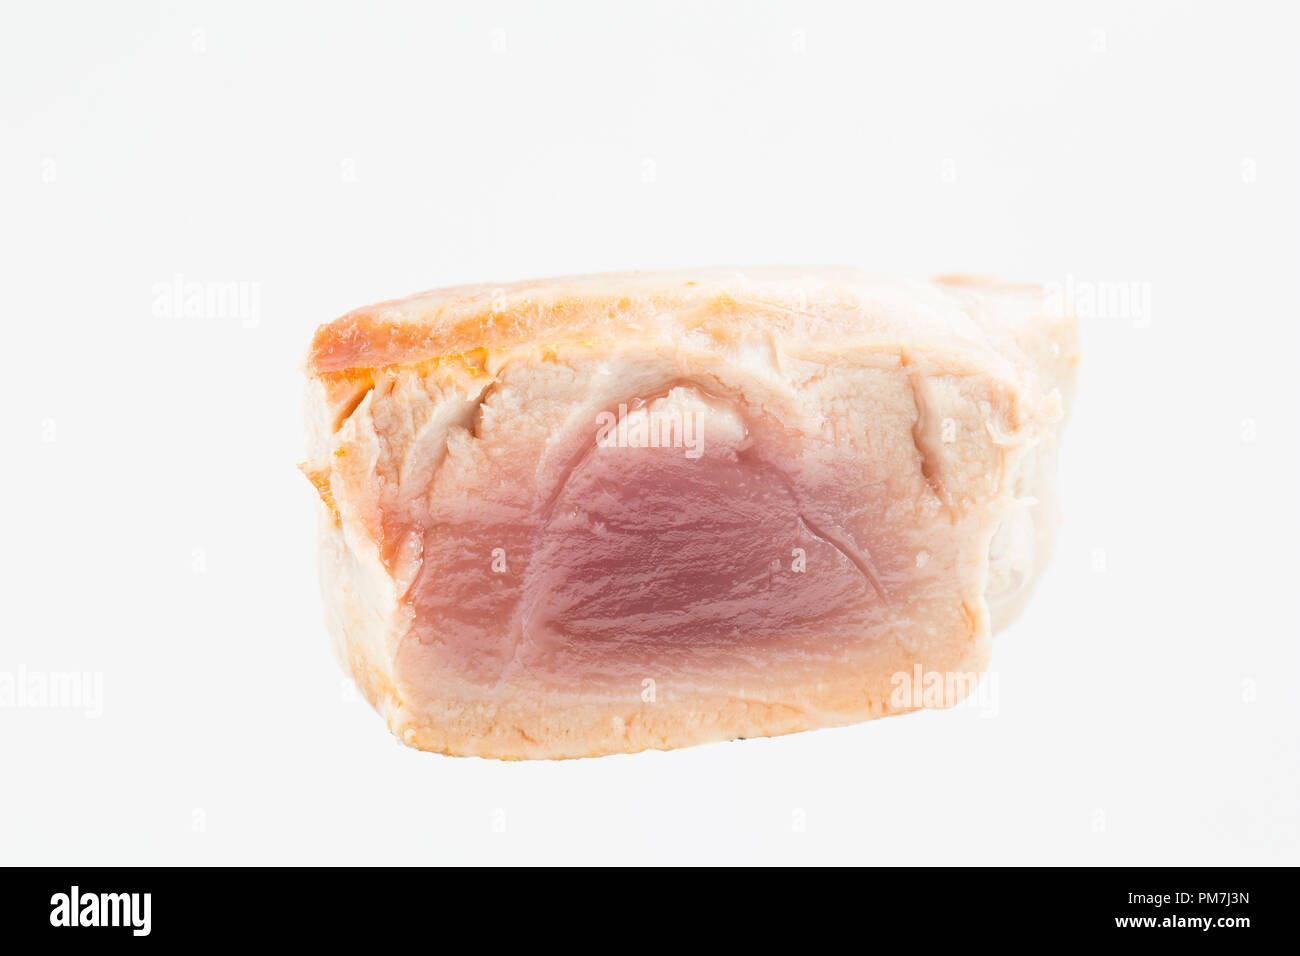 Una linea di cattura per il tonno albacora Thunnus albacares, bistecca acquistato da un supermercato nel Regno Unito e fotografati su uno sfondo bianco. Grigliata di mezzo raro Foto Stock